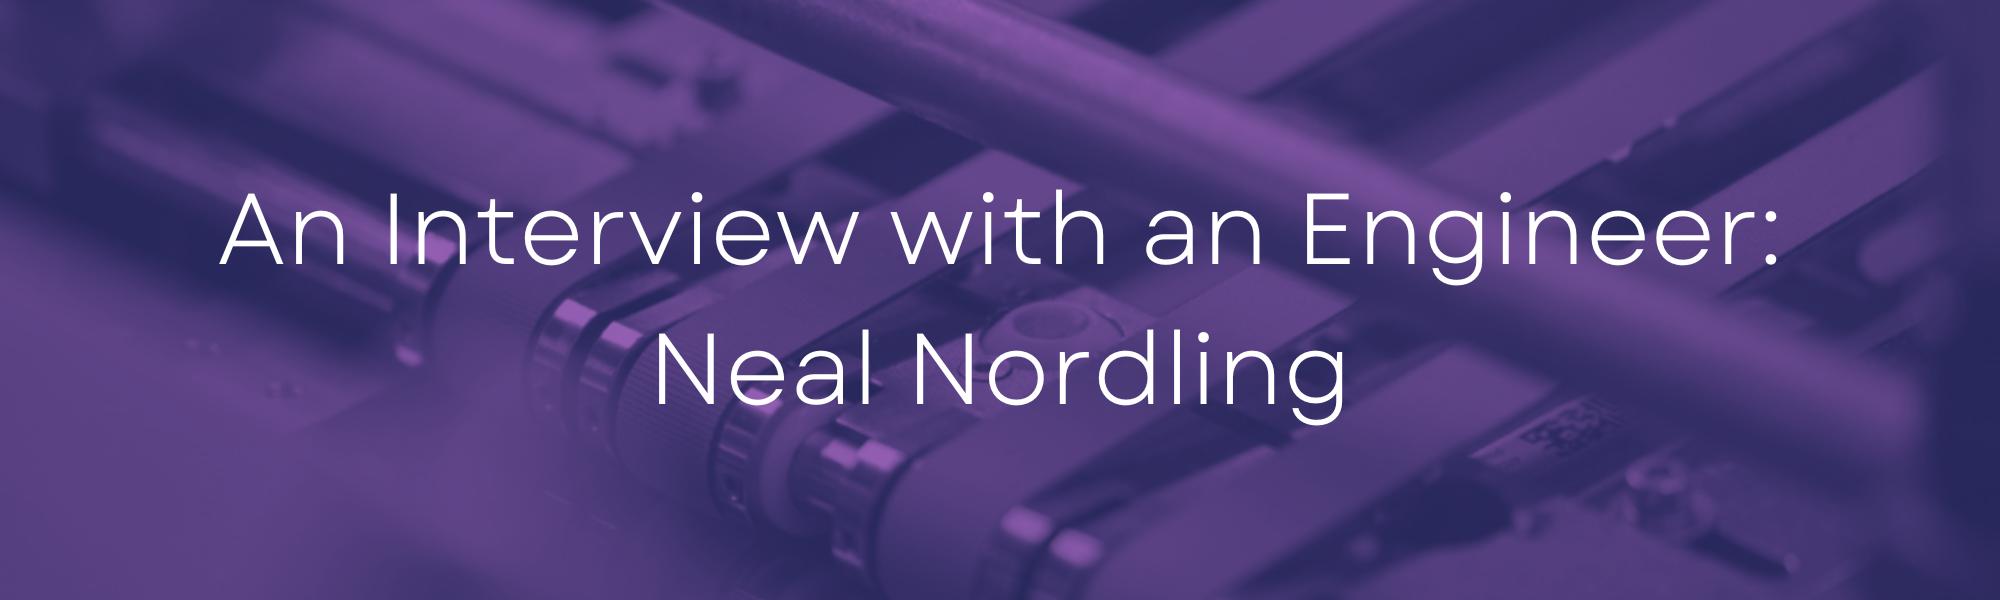 Neal Nordling Blog Header